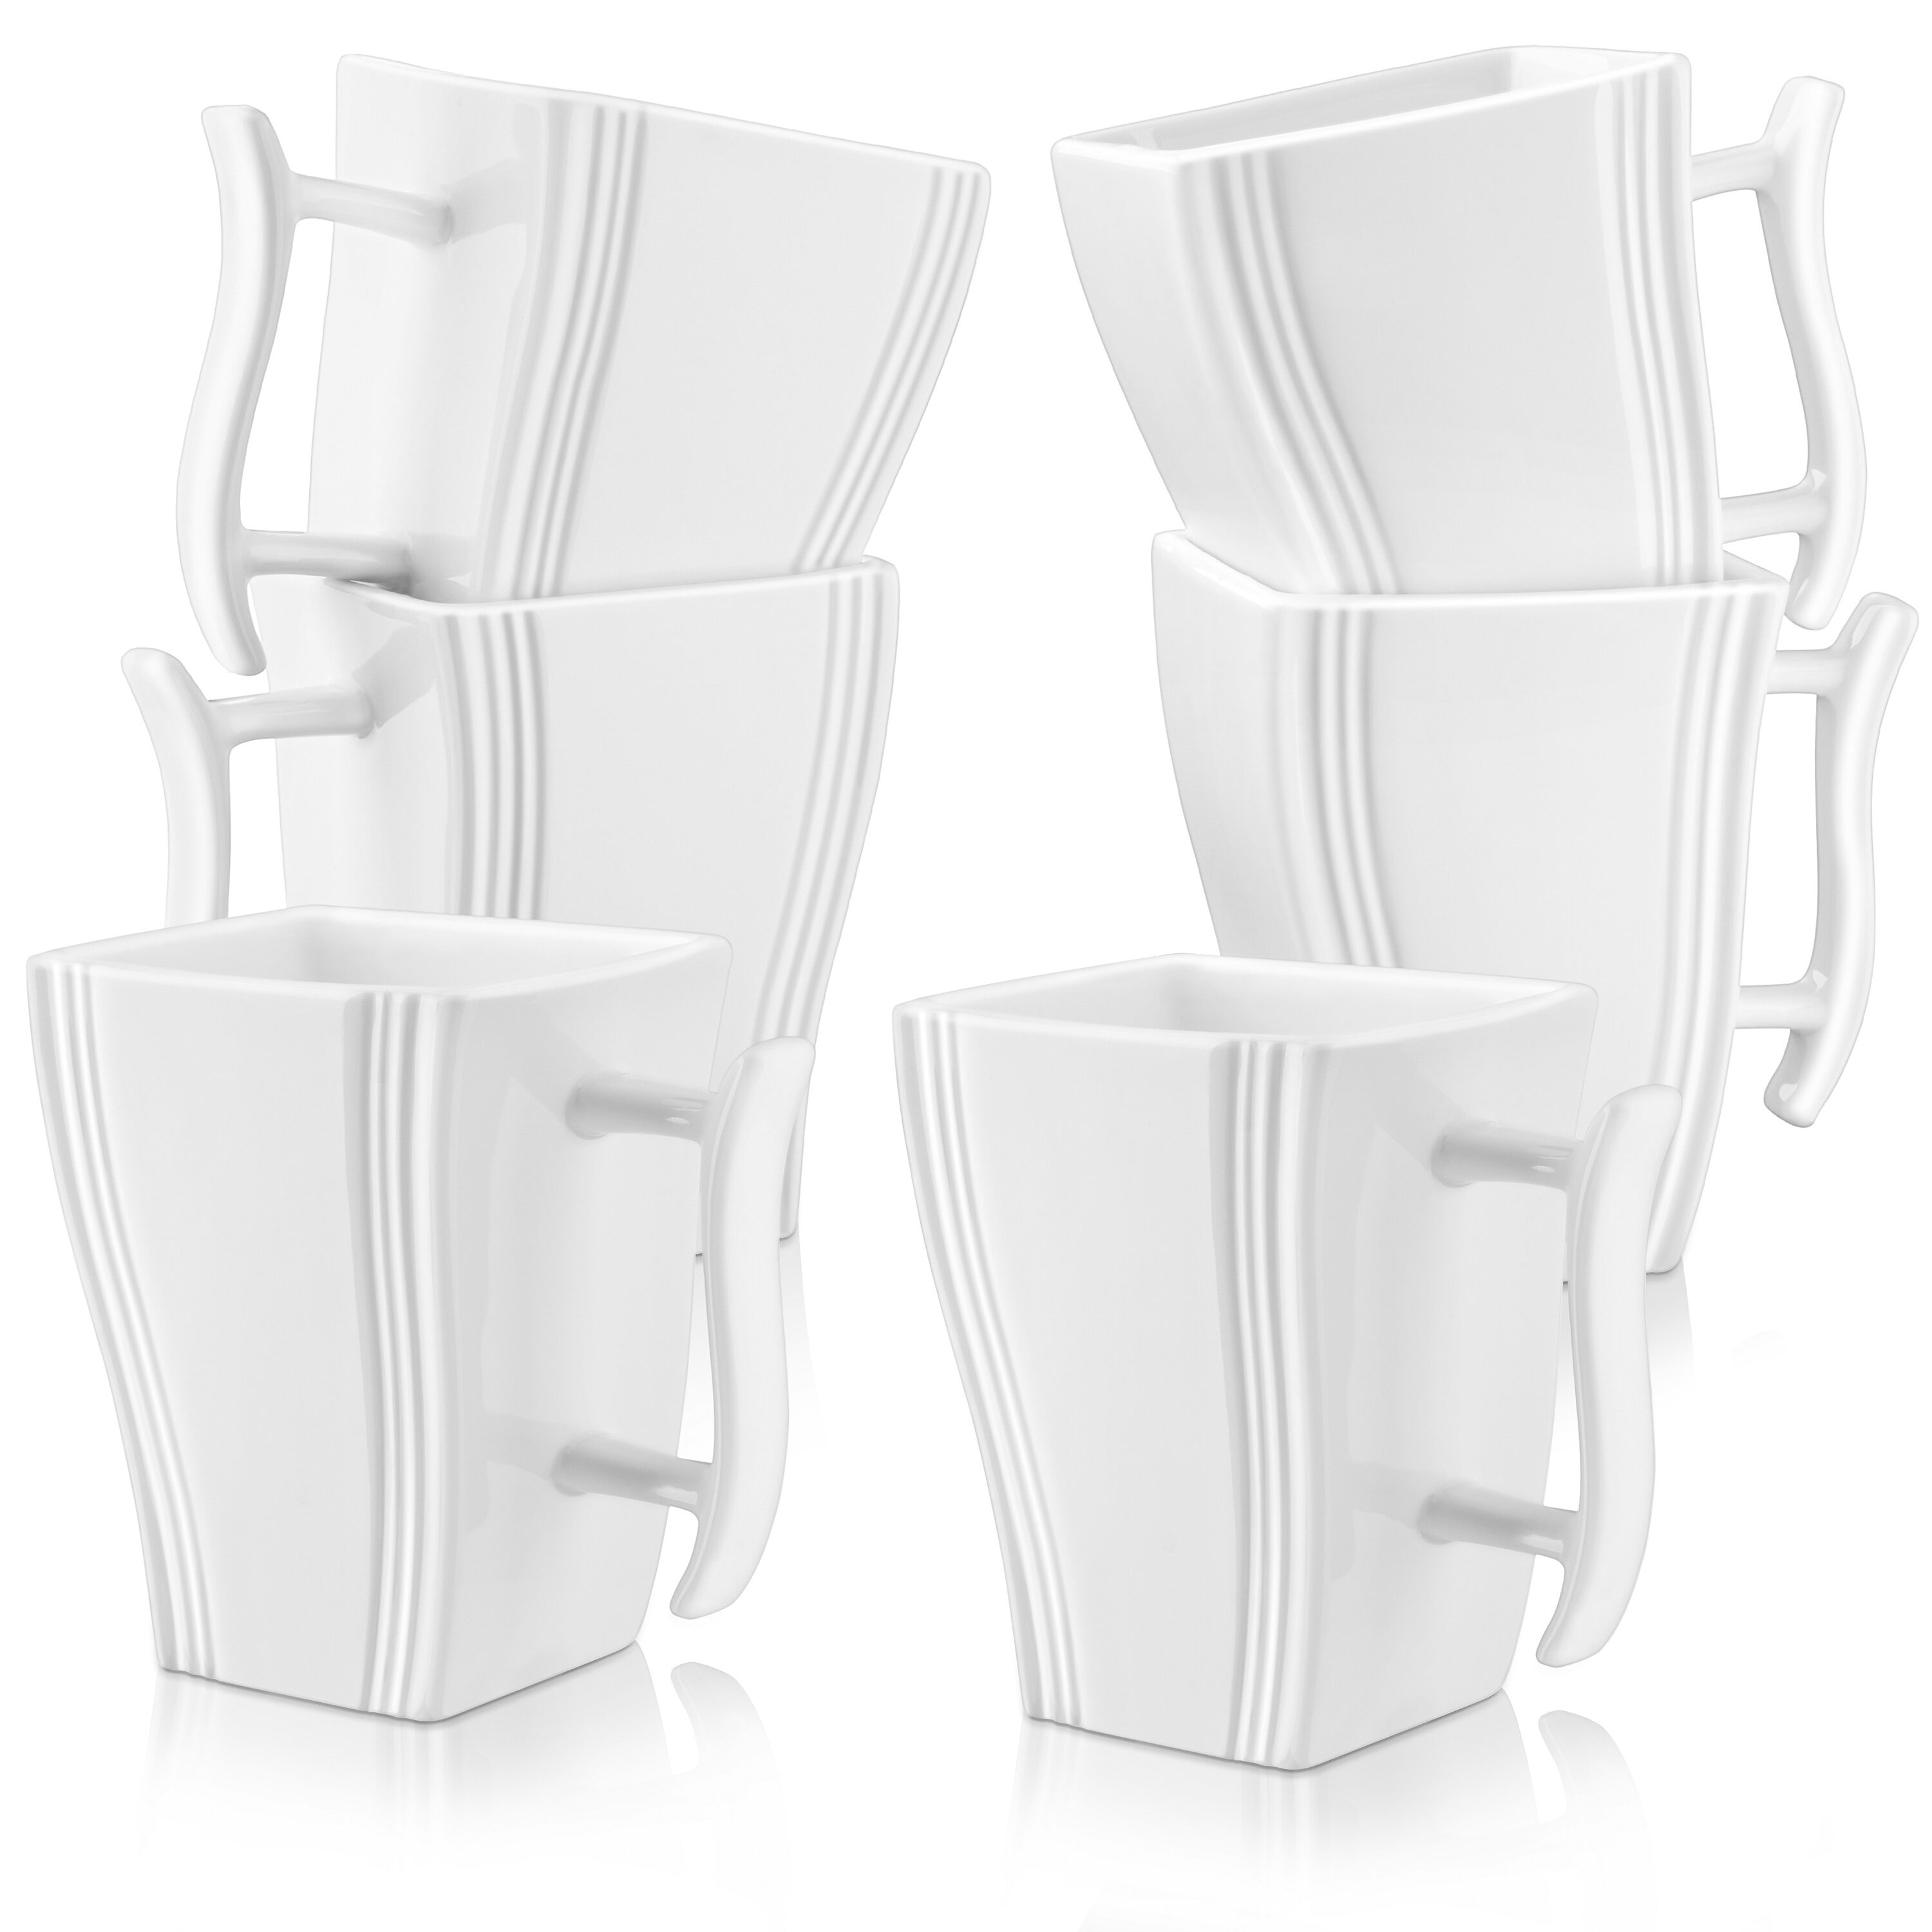 MALACASA Blance Mugs Set of 6